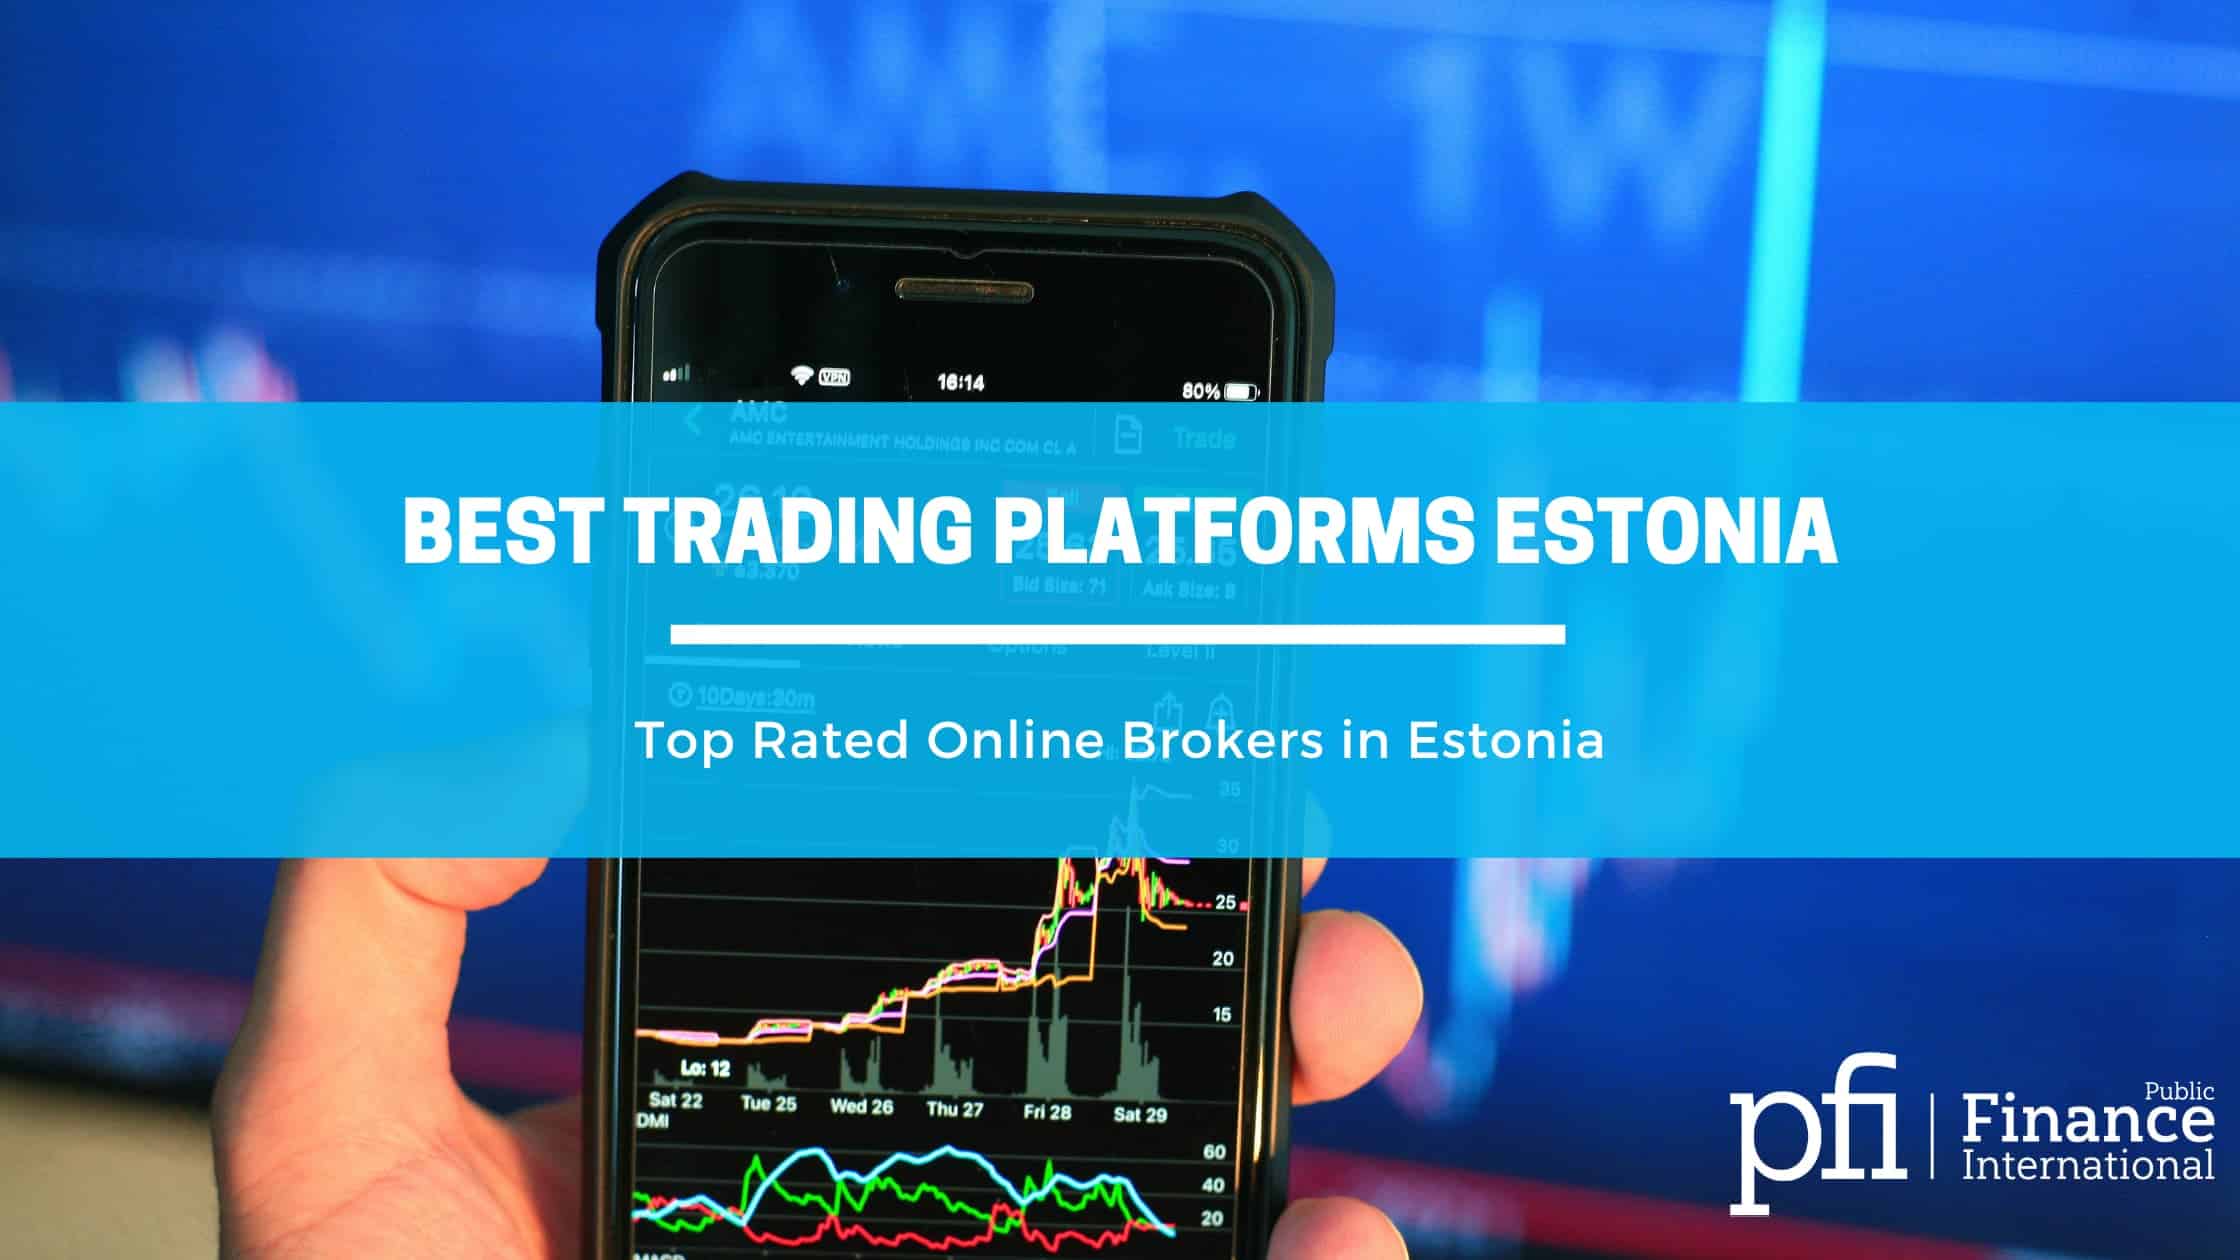 Estonia Best Online Brokers